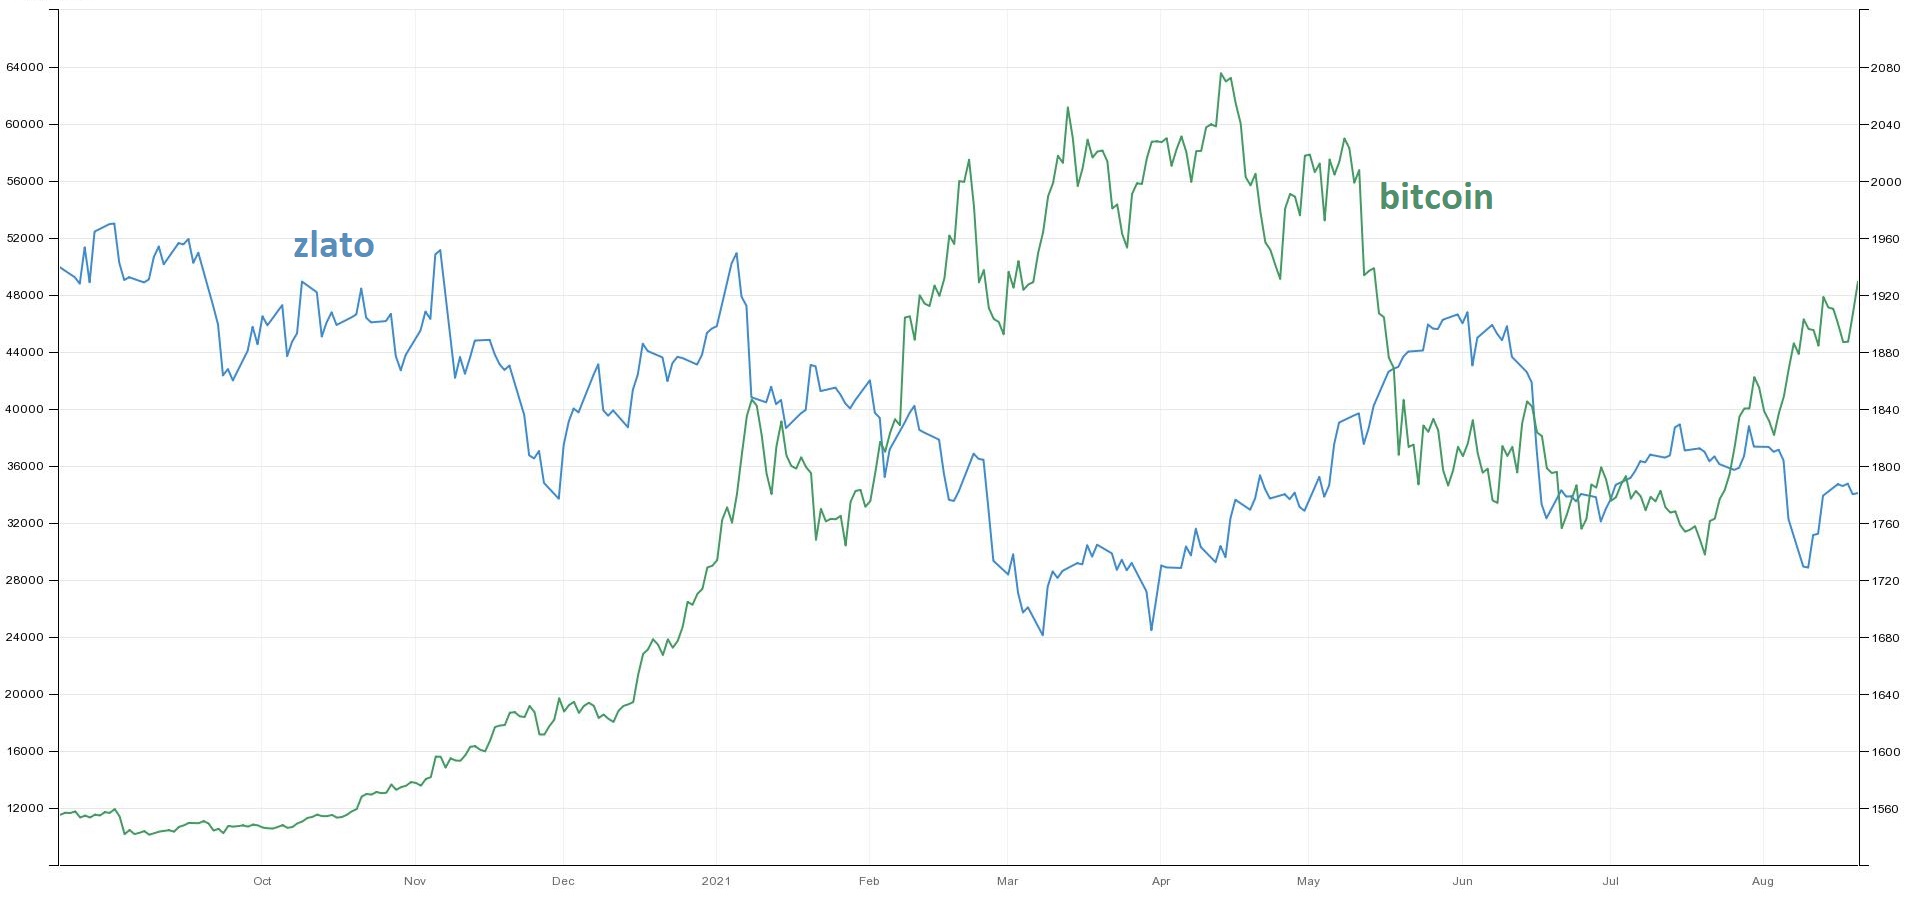 Vývoj kurzu bitcoinu a ceny zlata, zdroj: tradingeconomics.com